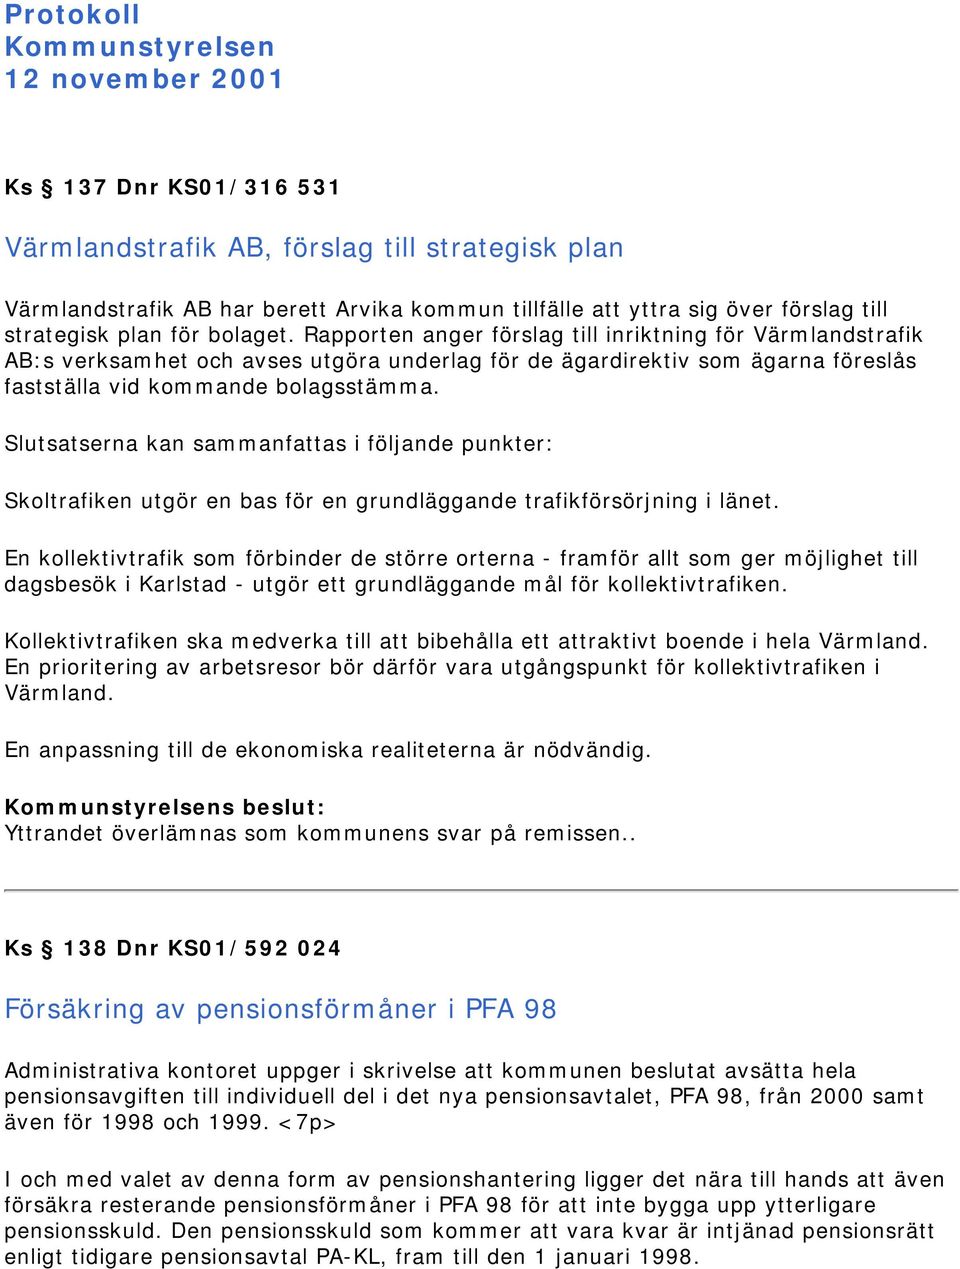 Rapporten anger förslag till inriktning för Värmlandstrafik AB:s verksamhet och avses utgöra underlag för de ägardirektiv som ägarna föreslås fastställa vid kommande bolagsstämma.